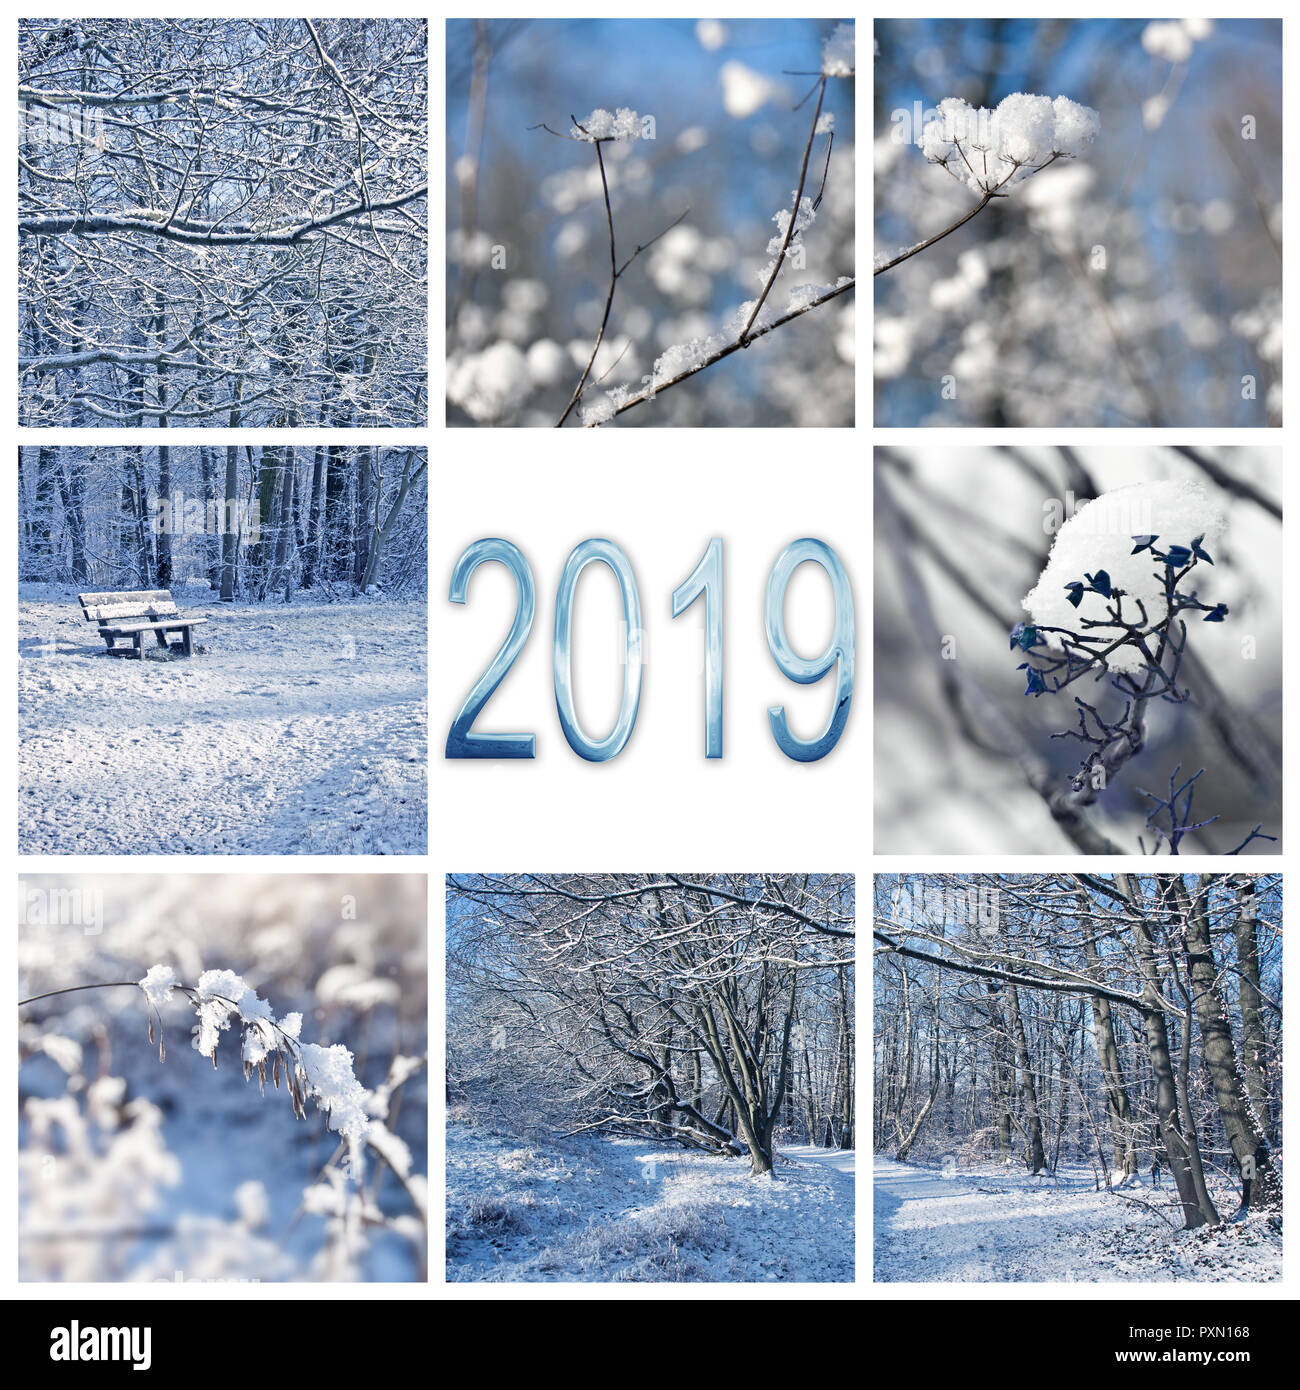 2019, la neve e il paesaggio invernale square biglietto di auguri Foto Stock